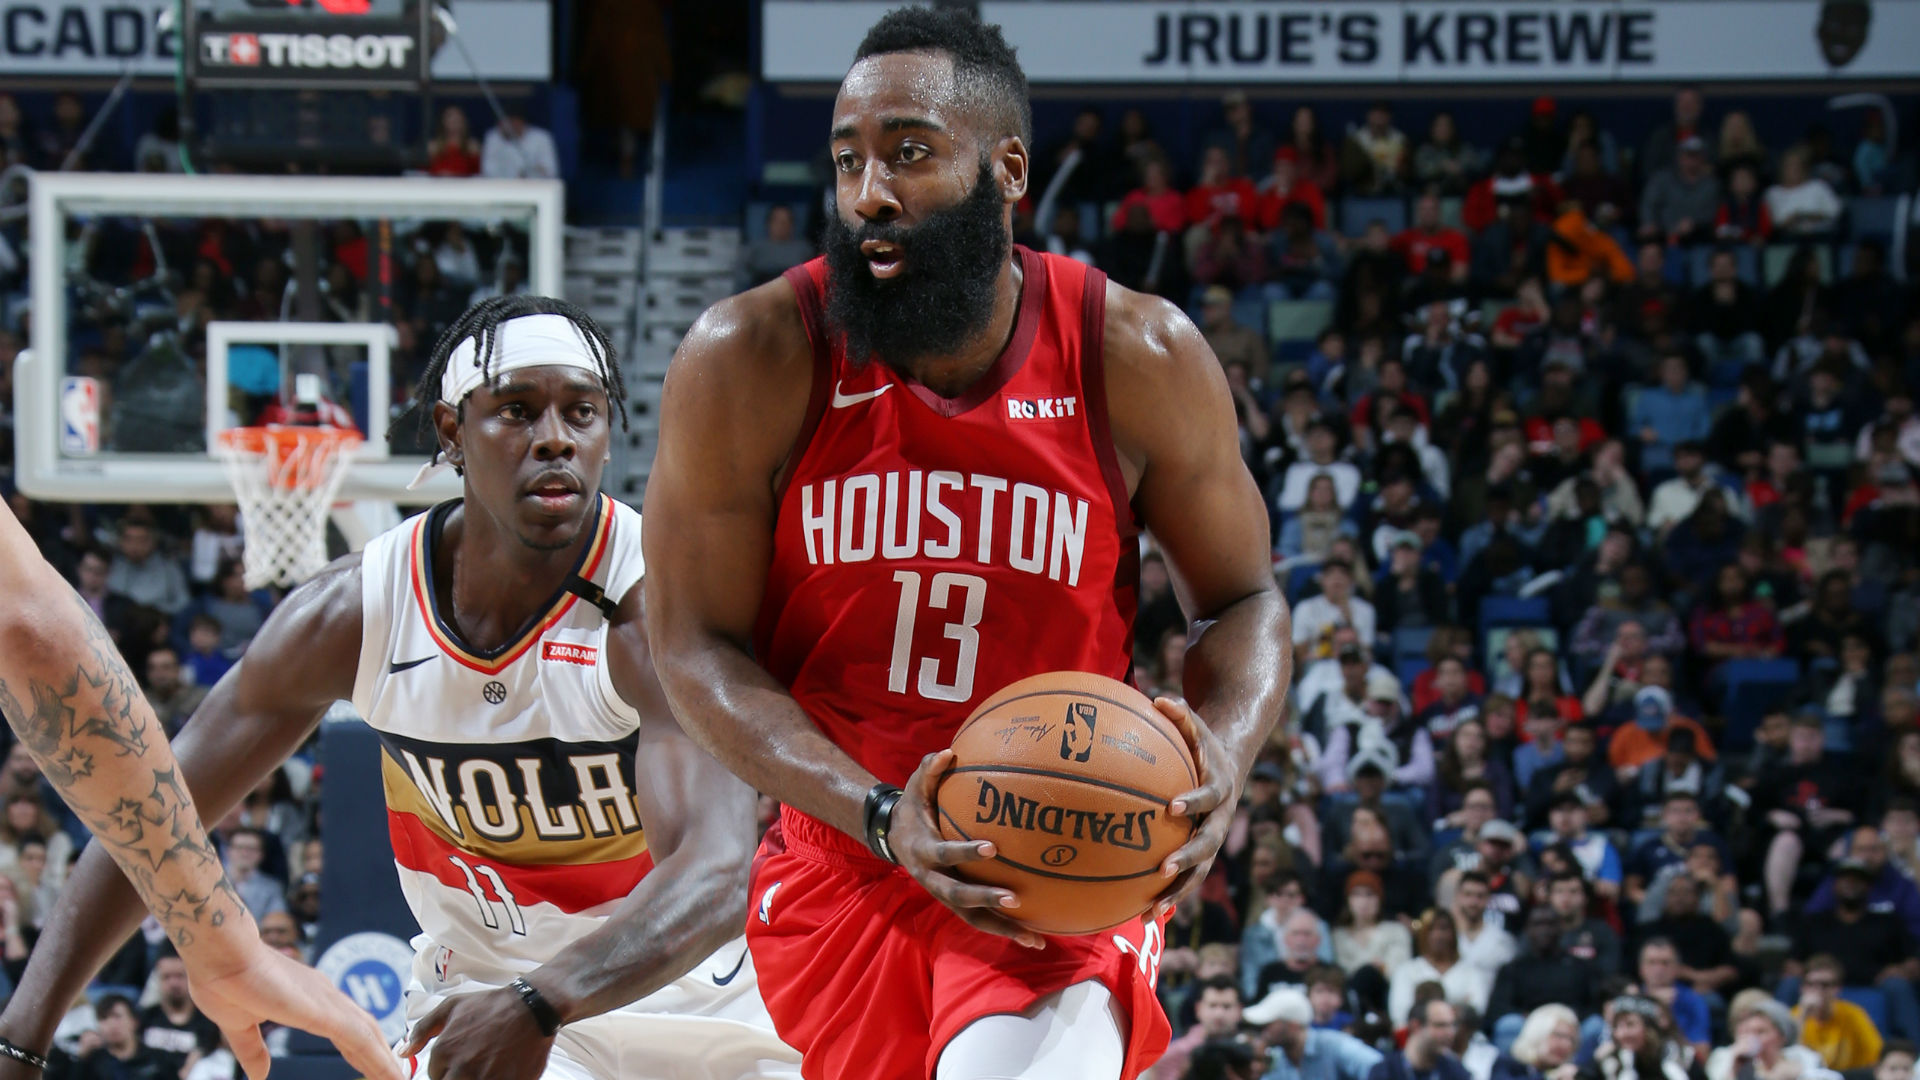 James Harden scores 41 as Rockets earn close win over Pelicans | NBA.com Canada | The ...